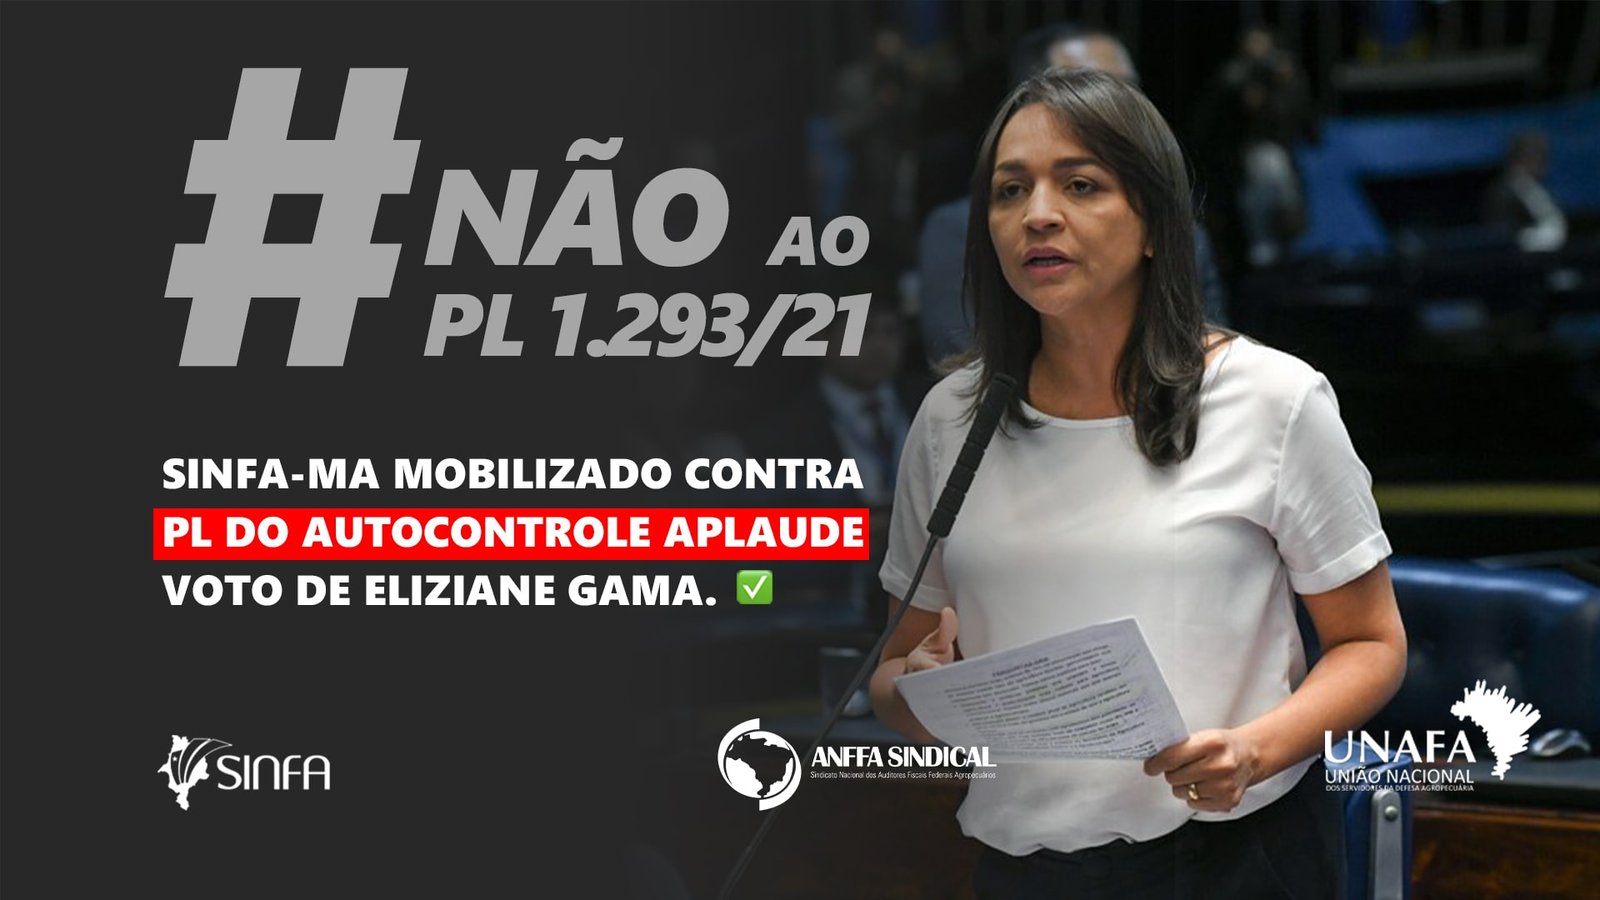 SINFA-MA mobilizado contra PL do Autocontrole aplaude voto de Eliziane Gama.